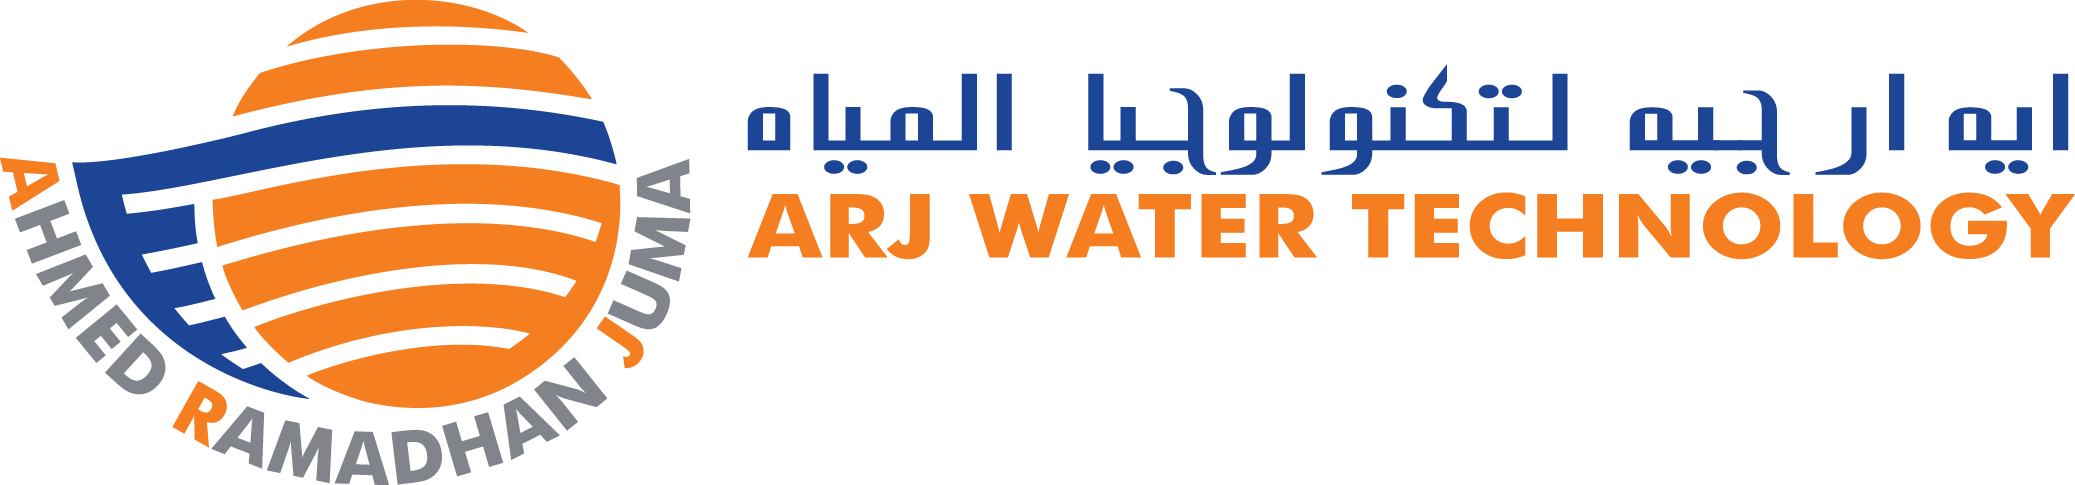 ARJ Water Technology, LLC